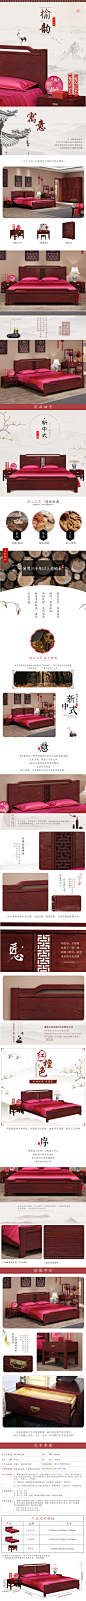 新中式床详情  榆木系列旧产品详情页，风格看着稍微有点旧。